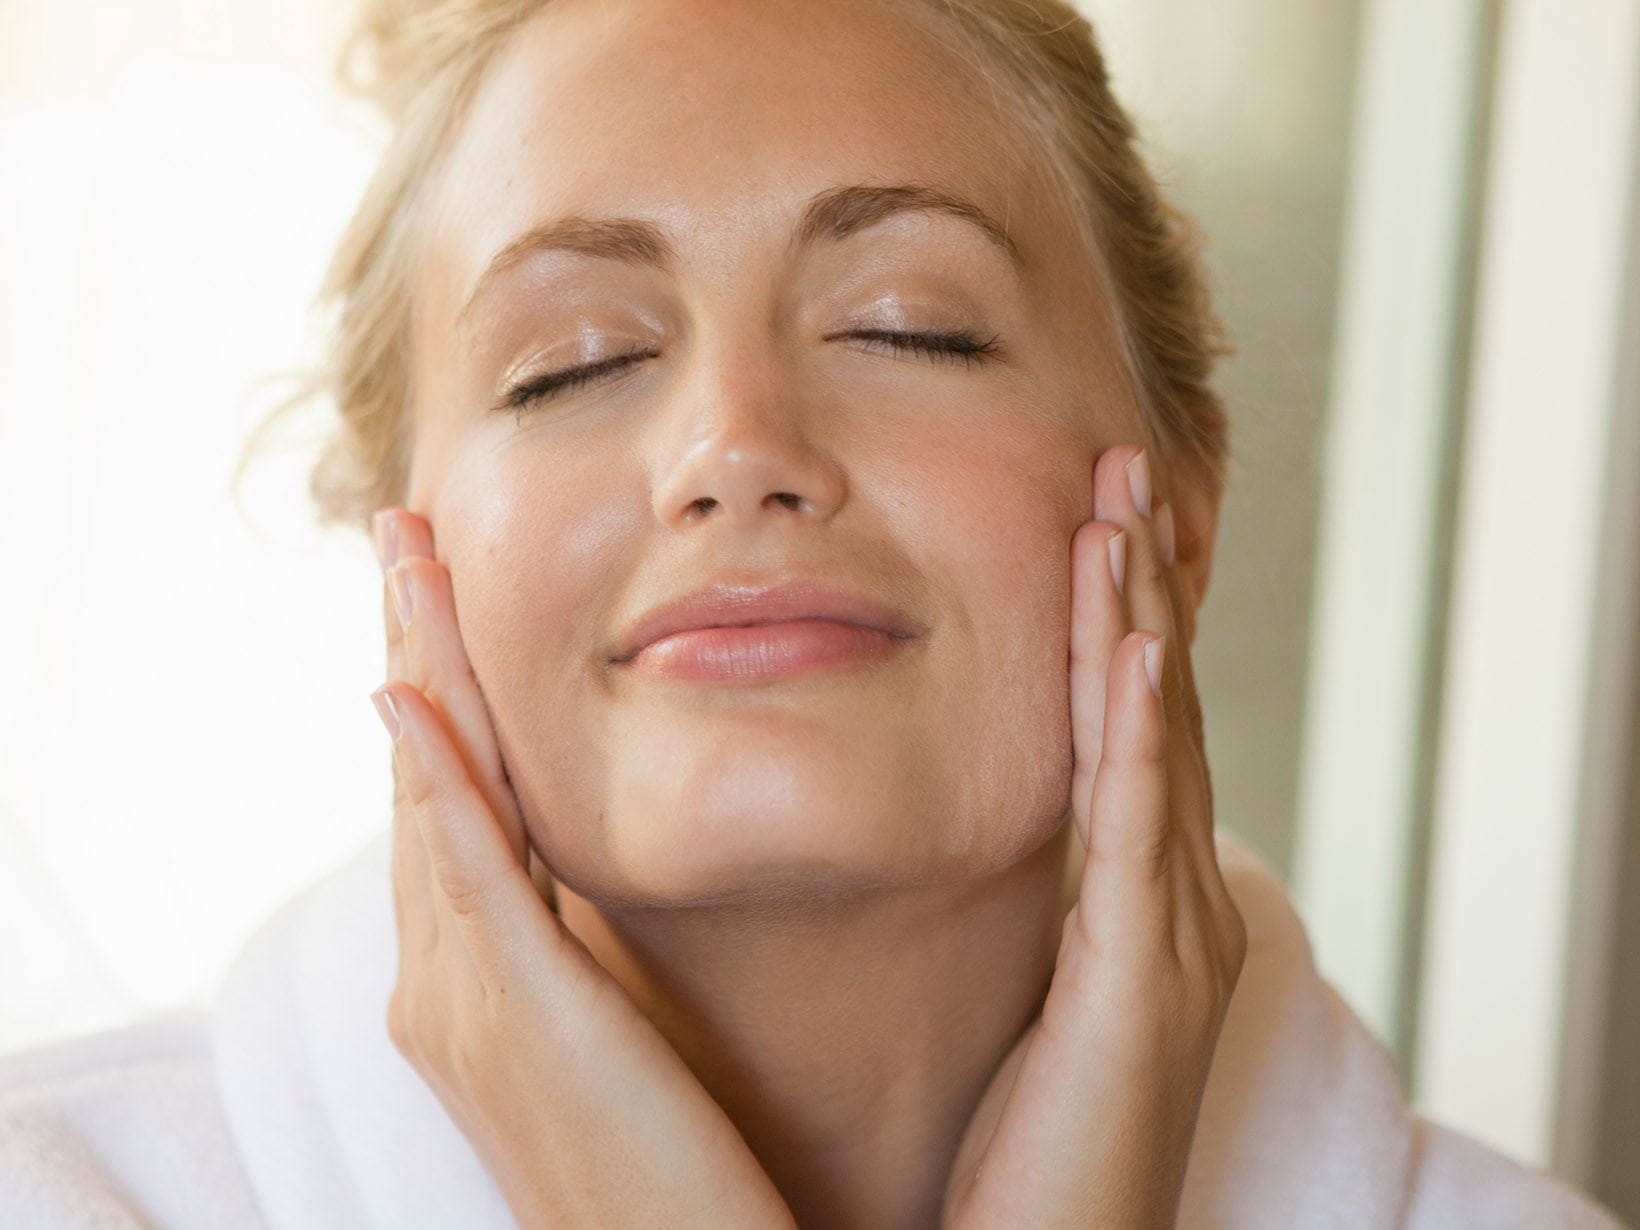 woman massaging face